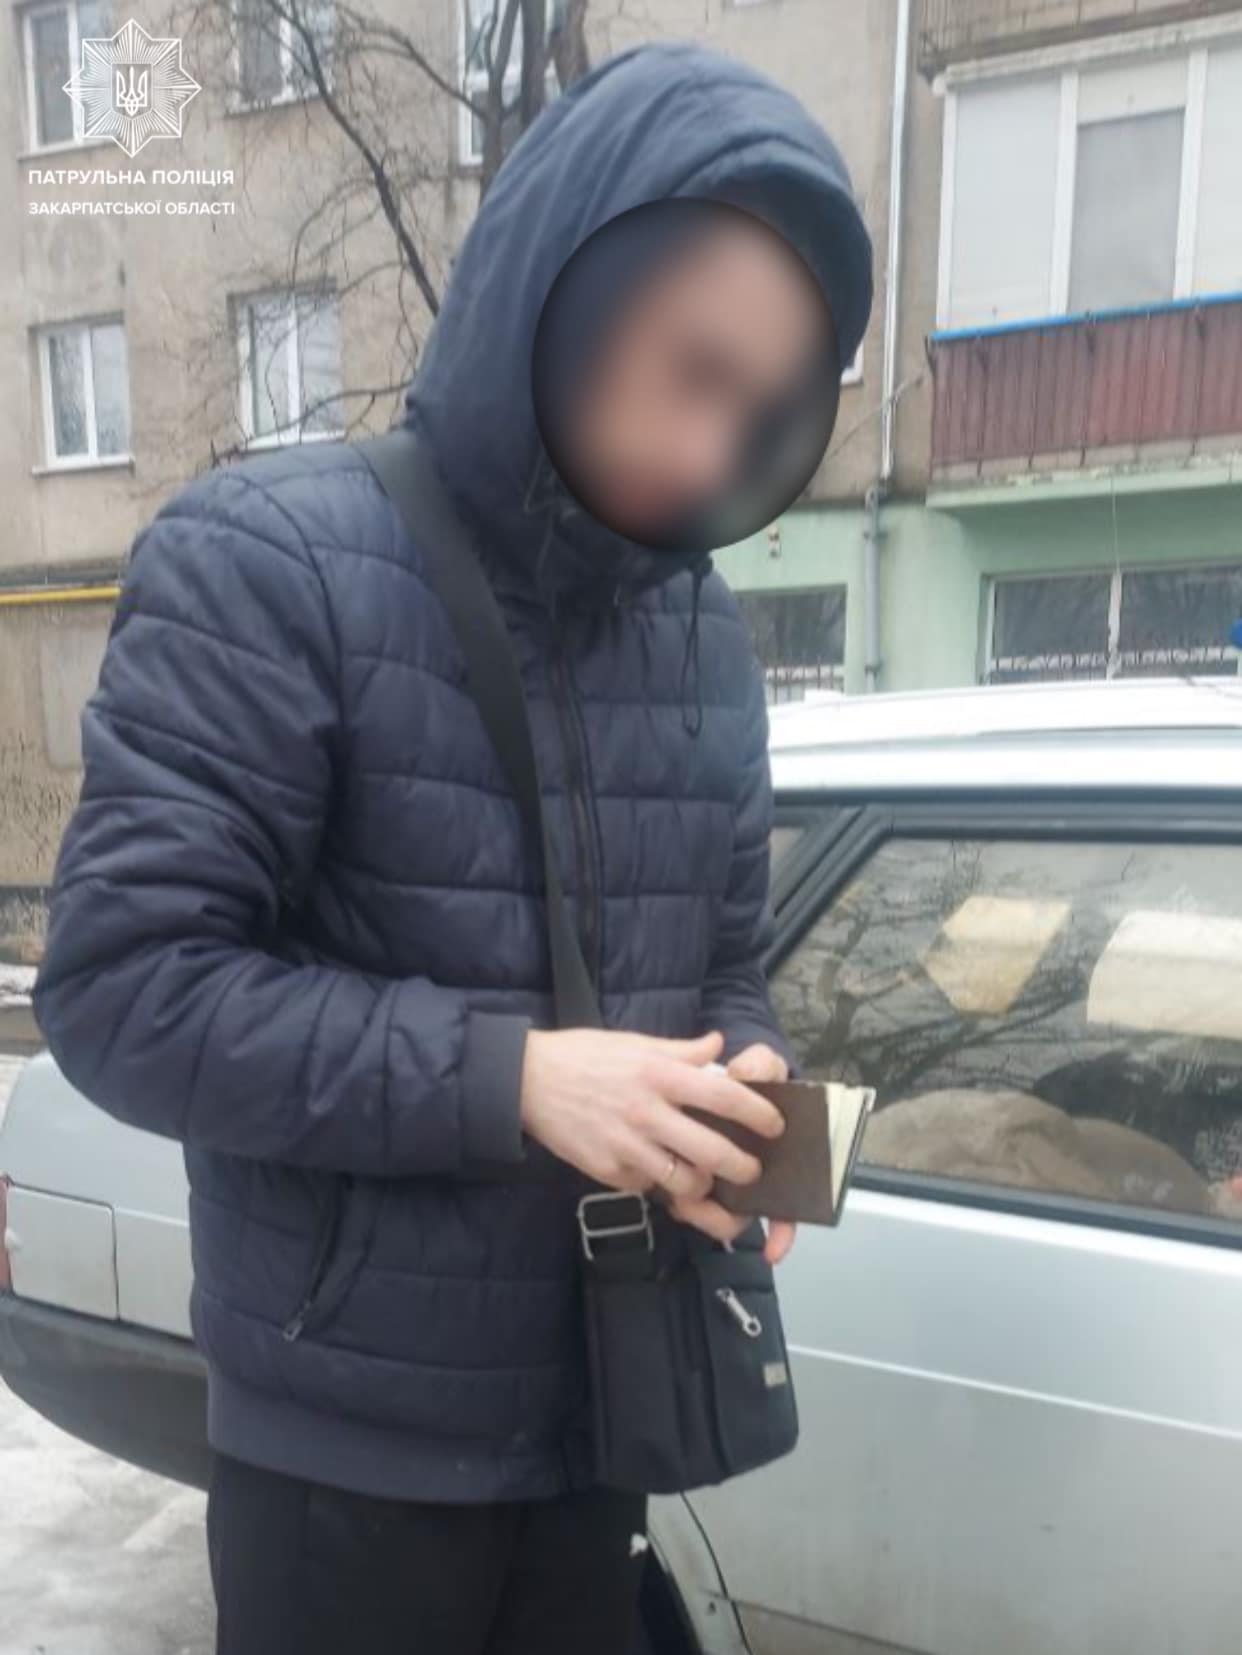 Сегодня, около 11 часов, в инспекторы поступил звонок об аварии на улице Льва Толстого в Ужгороде.